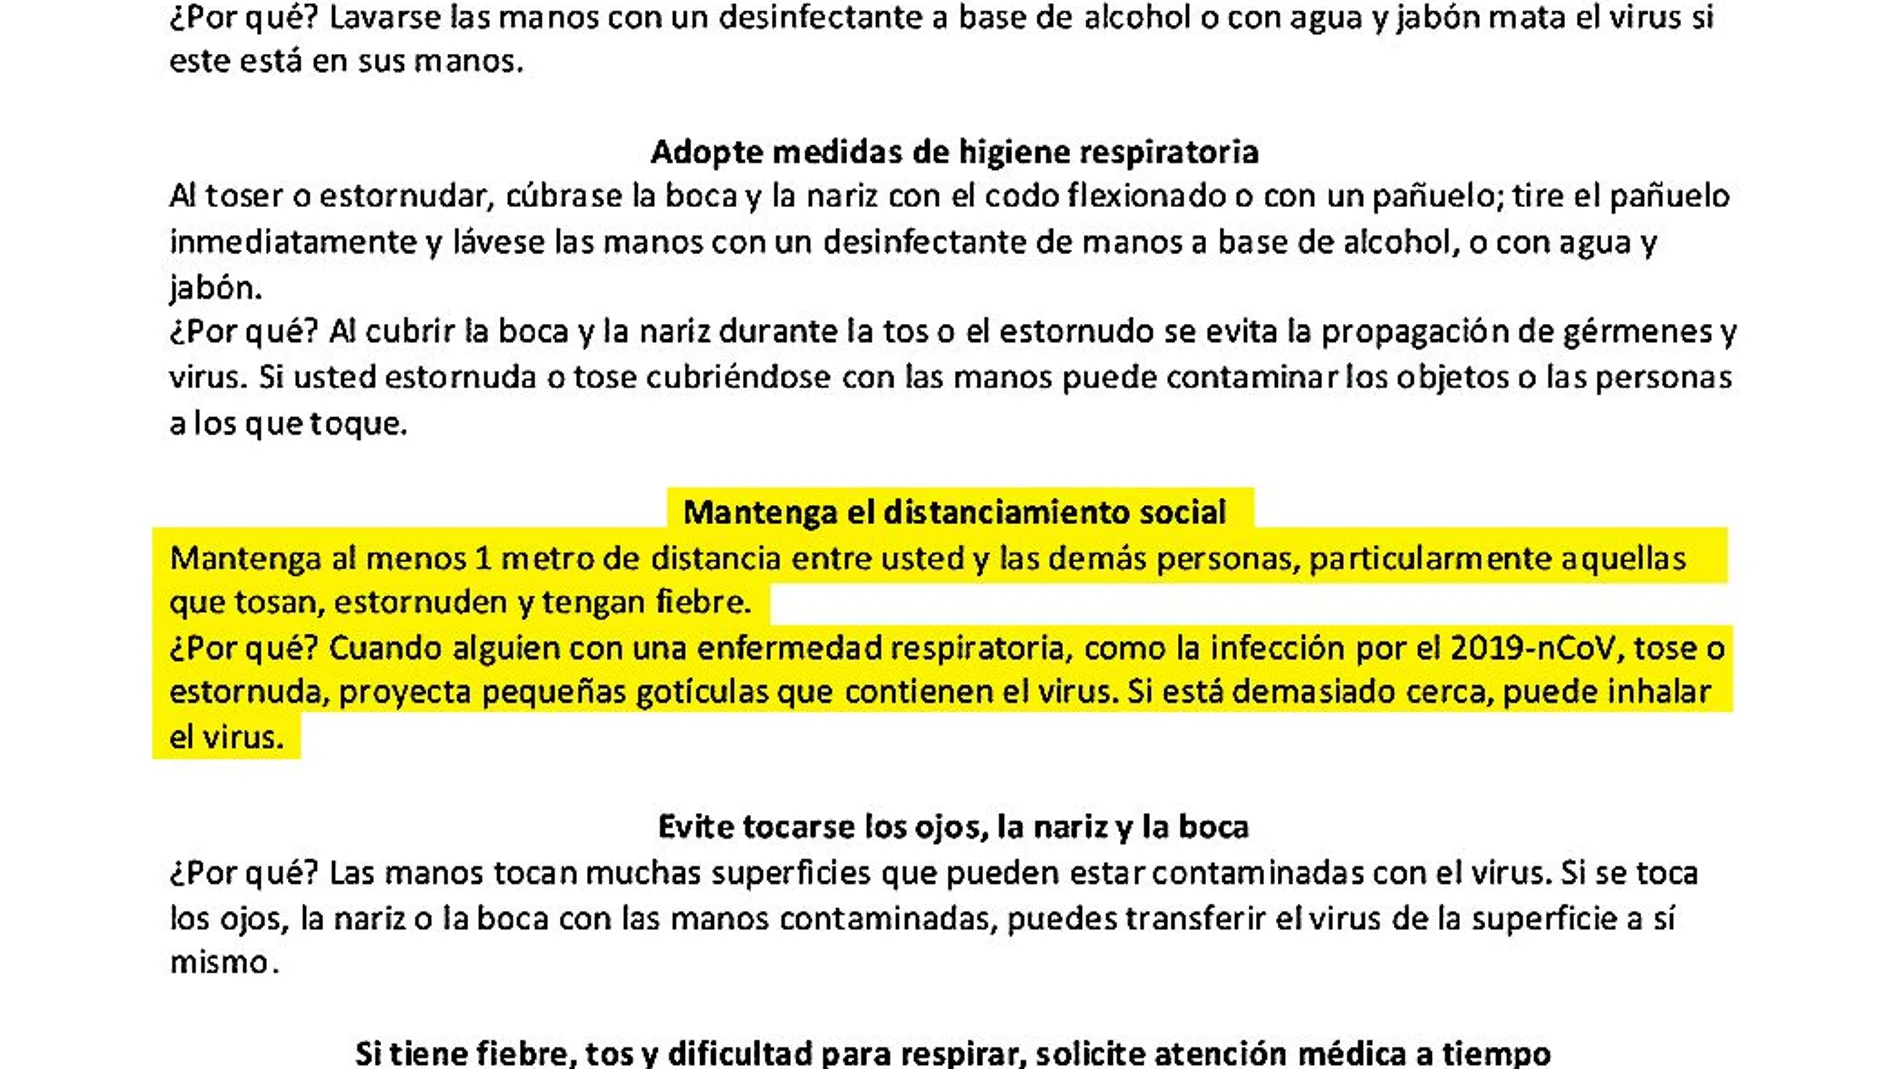 Documento del 26 de febrero de Moncloa con medidas de protección básicas contra el nuevo coronavirus, entre las que estaba mantener la medida de distancia de al menos un metro entre las personas.